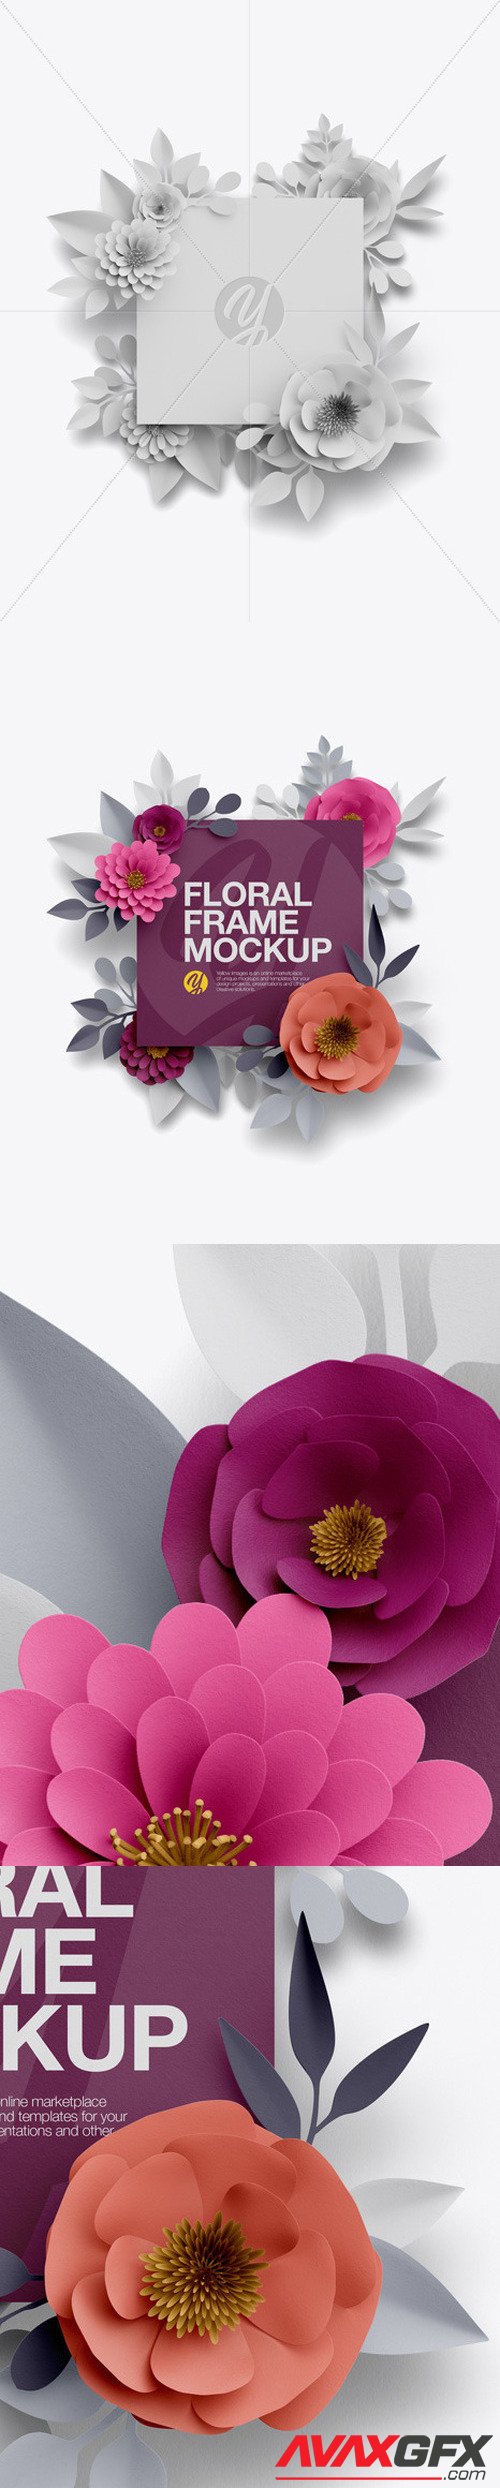 Paper Flower Square Frame Mockup 50584 [TIF]